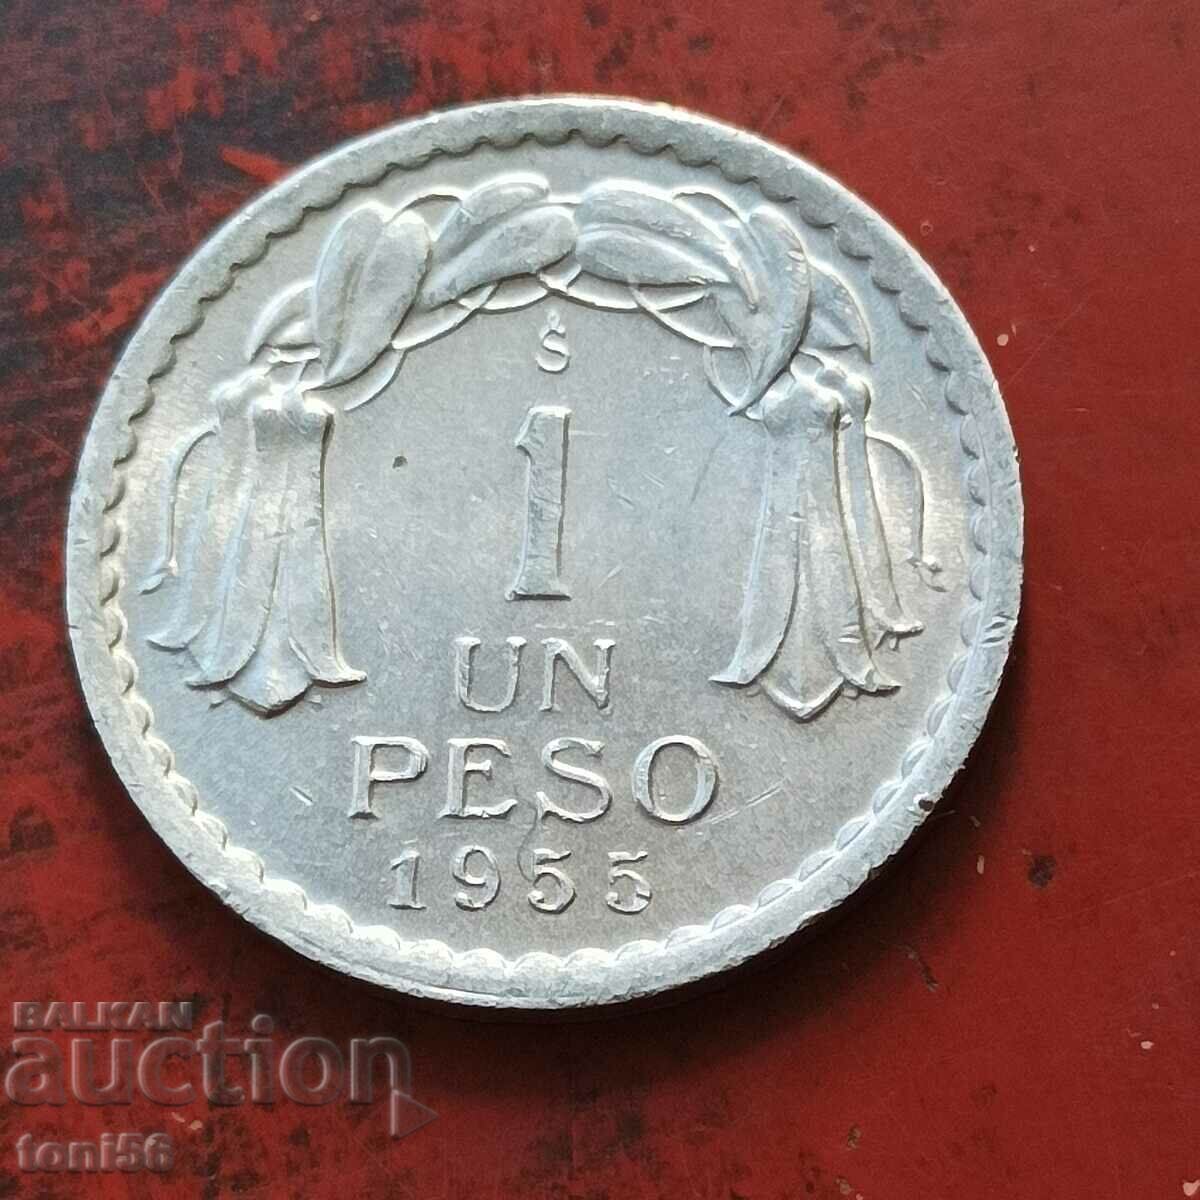 Chile 1 peso 1955 aUNC